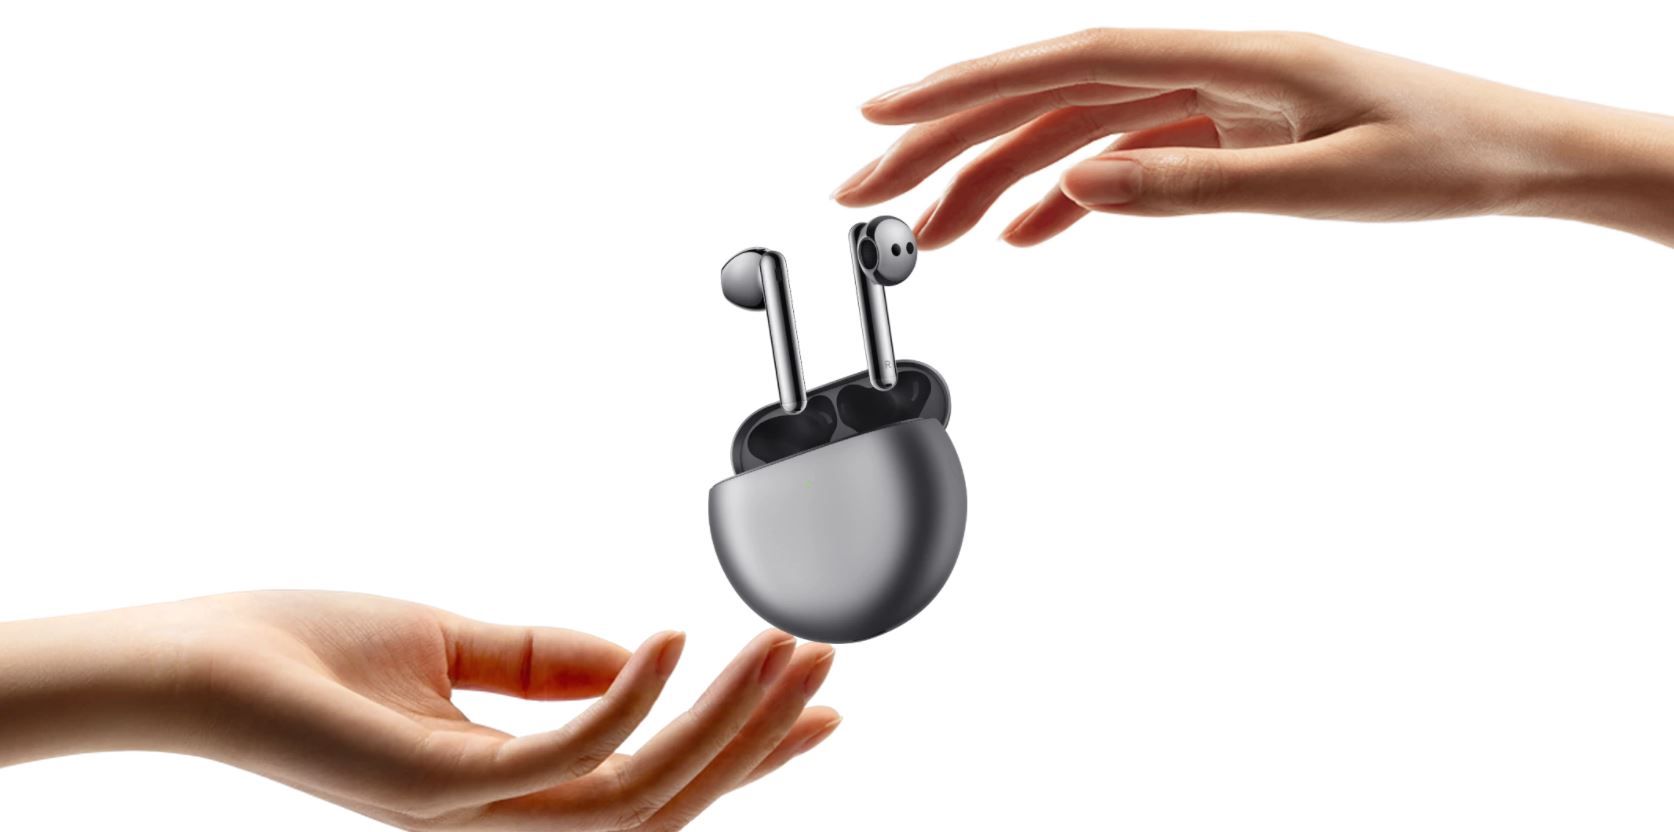  krásná přenosná sluchátka huawei freebuds 4 nabíjecí box Bluetooth anc aktivní potlačení hluků ipx4 odolnost vodě mikrofon špičkový zvuk výkonné měniče stylový design pohodlná v uších ergonomicky tvarovaná lehounké provedení pecky do uší podpora hlasových asistentů ovládání mobilní aplikací